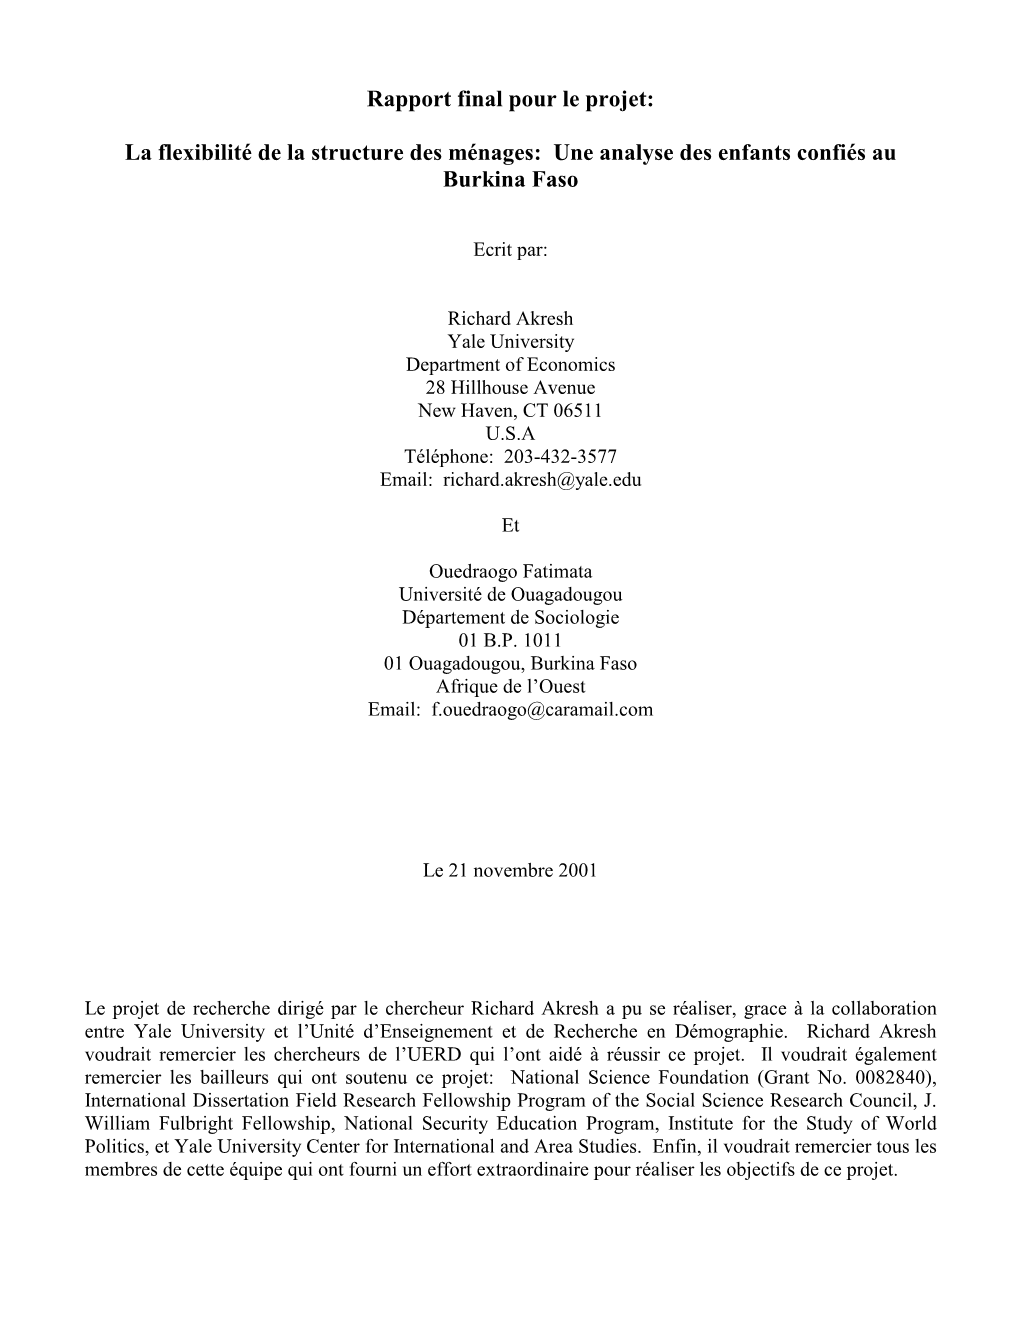 Rapport Final Pour Le Projet: La Flexibilité De La Structure Des